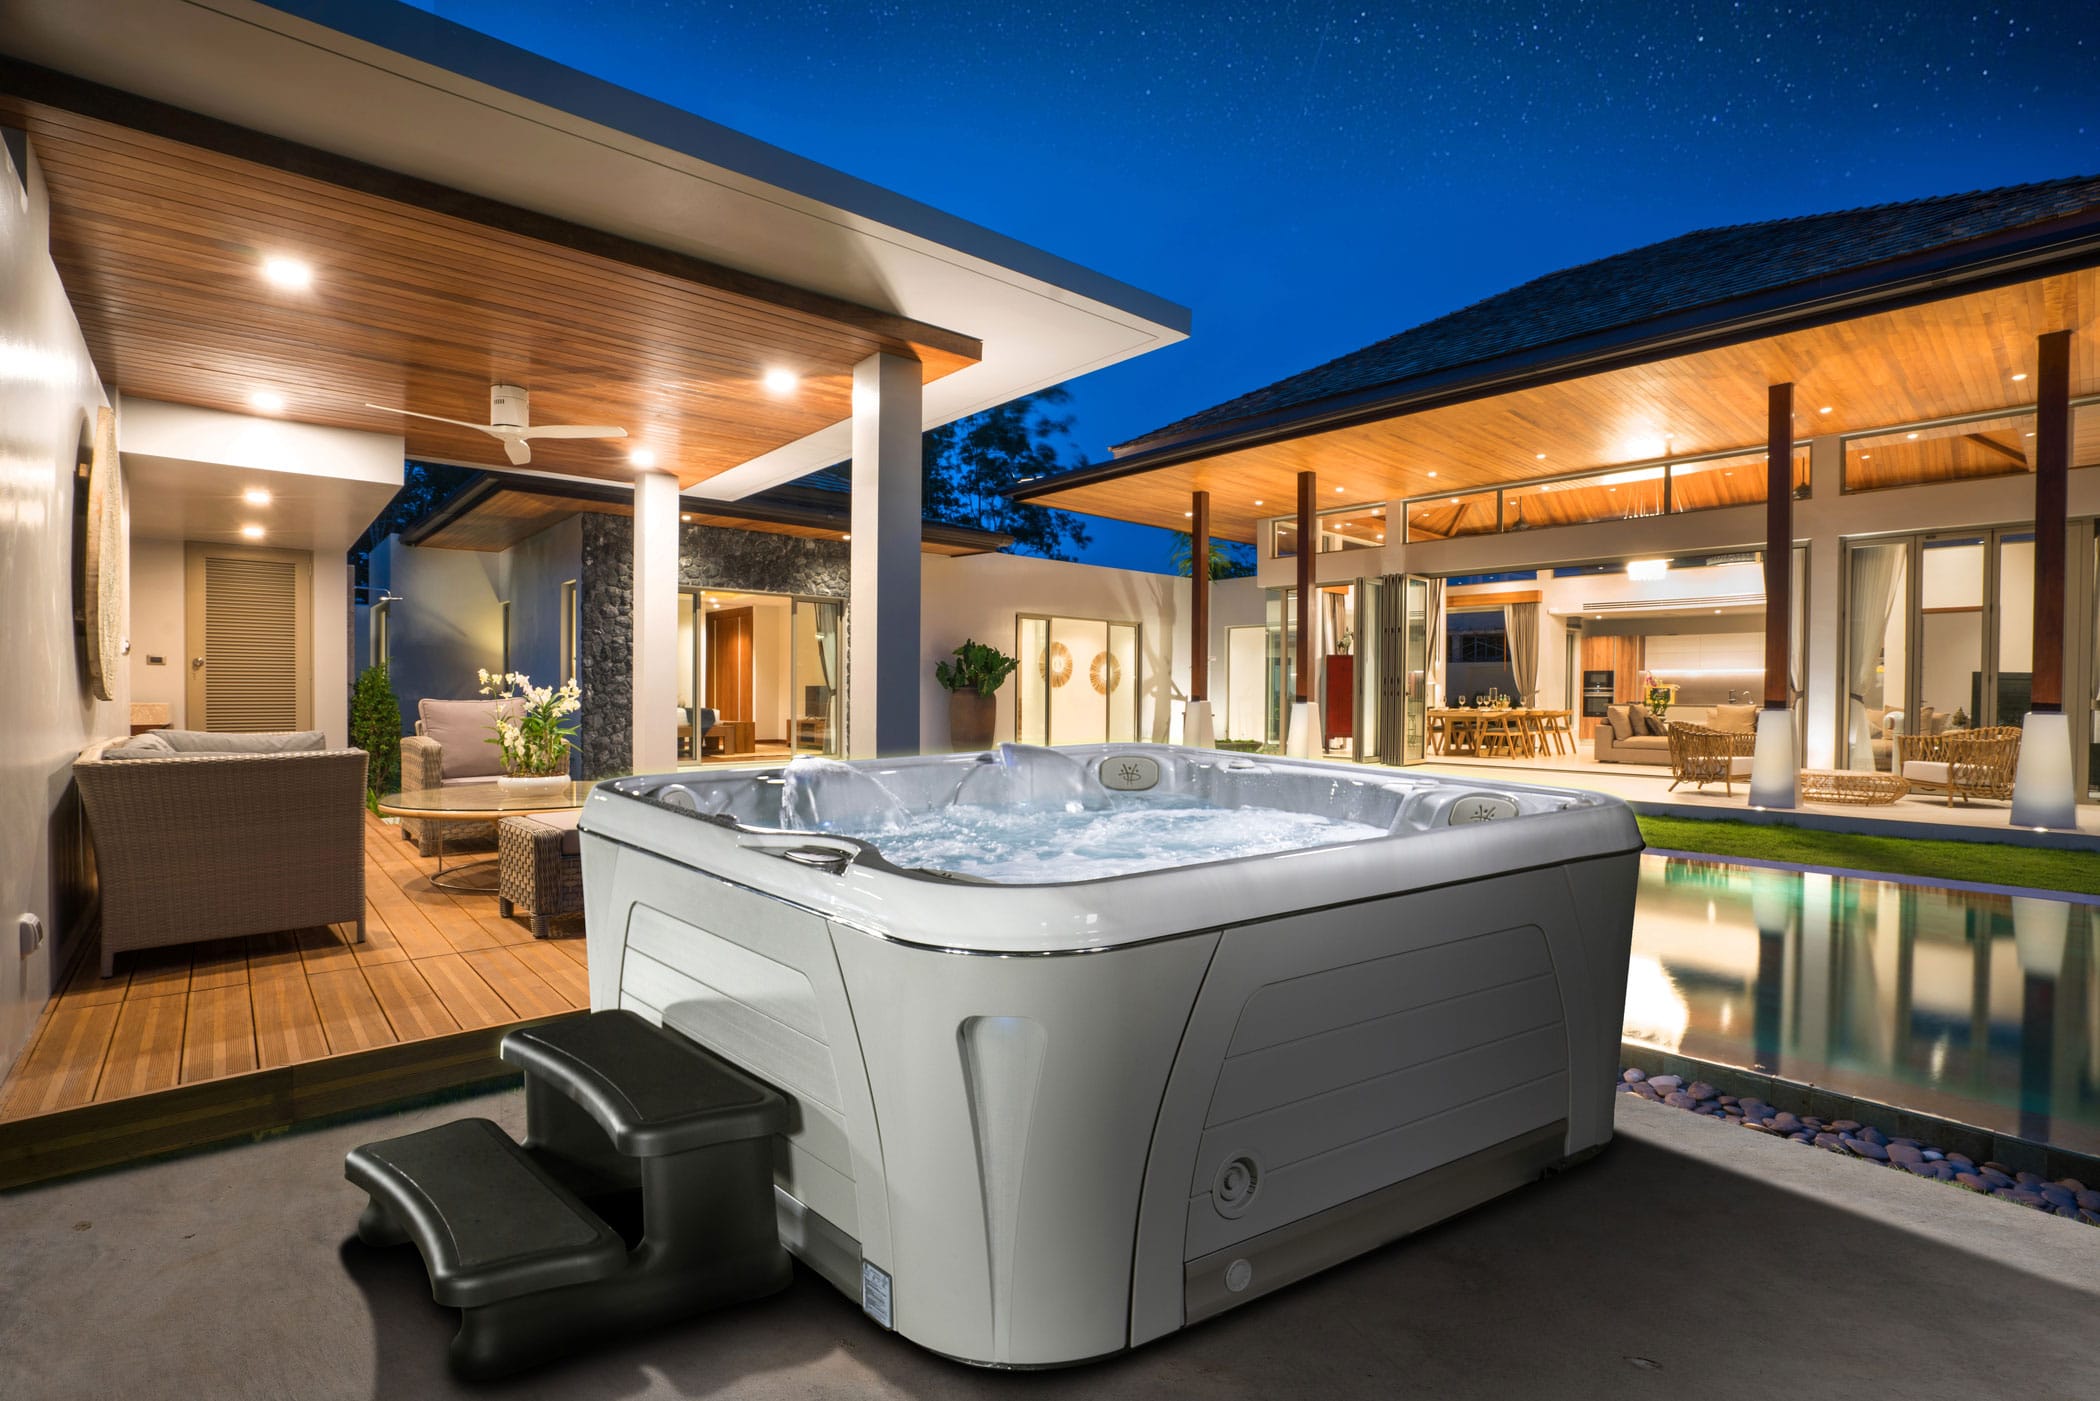 Serenity 5900 Luxury 5 Person Hot Tub Hydropool Surrey